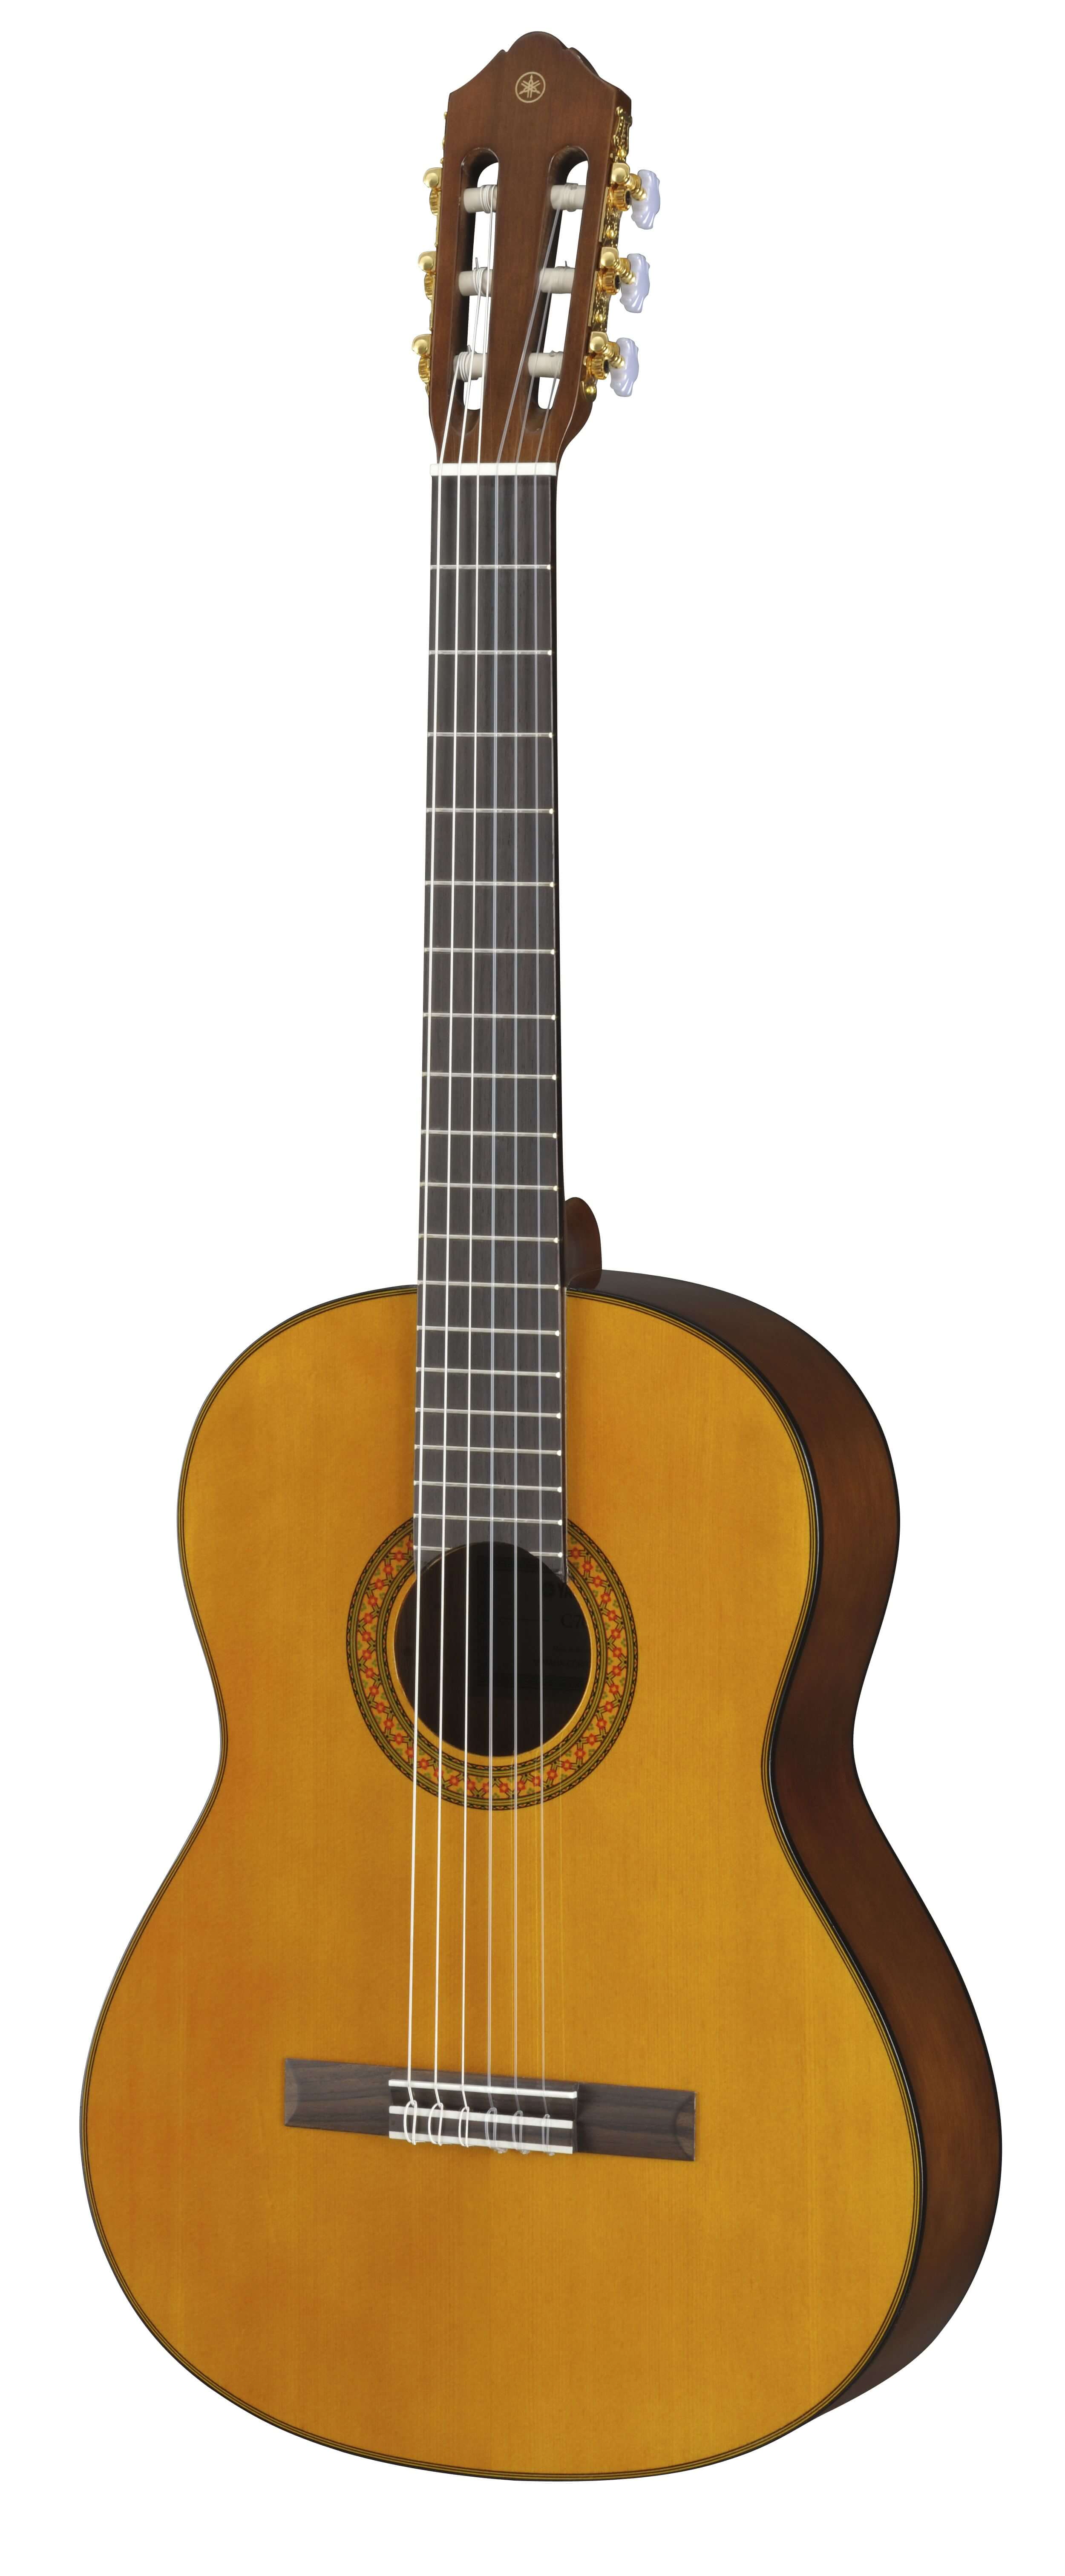 Guitarra Clásica Yamaha C70